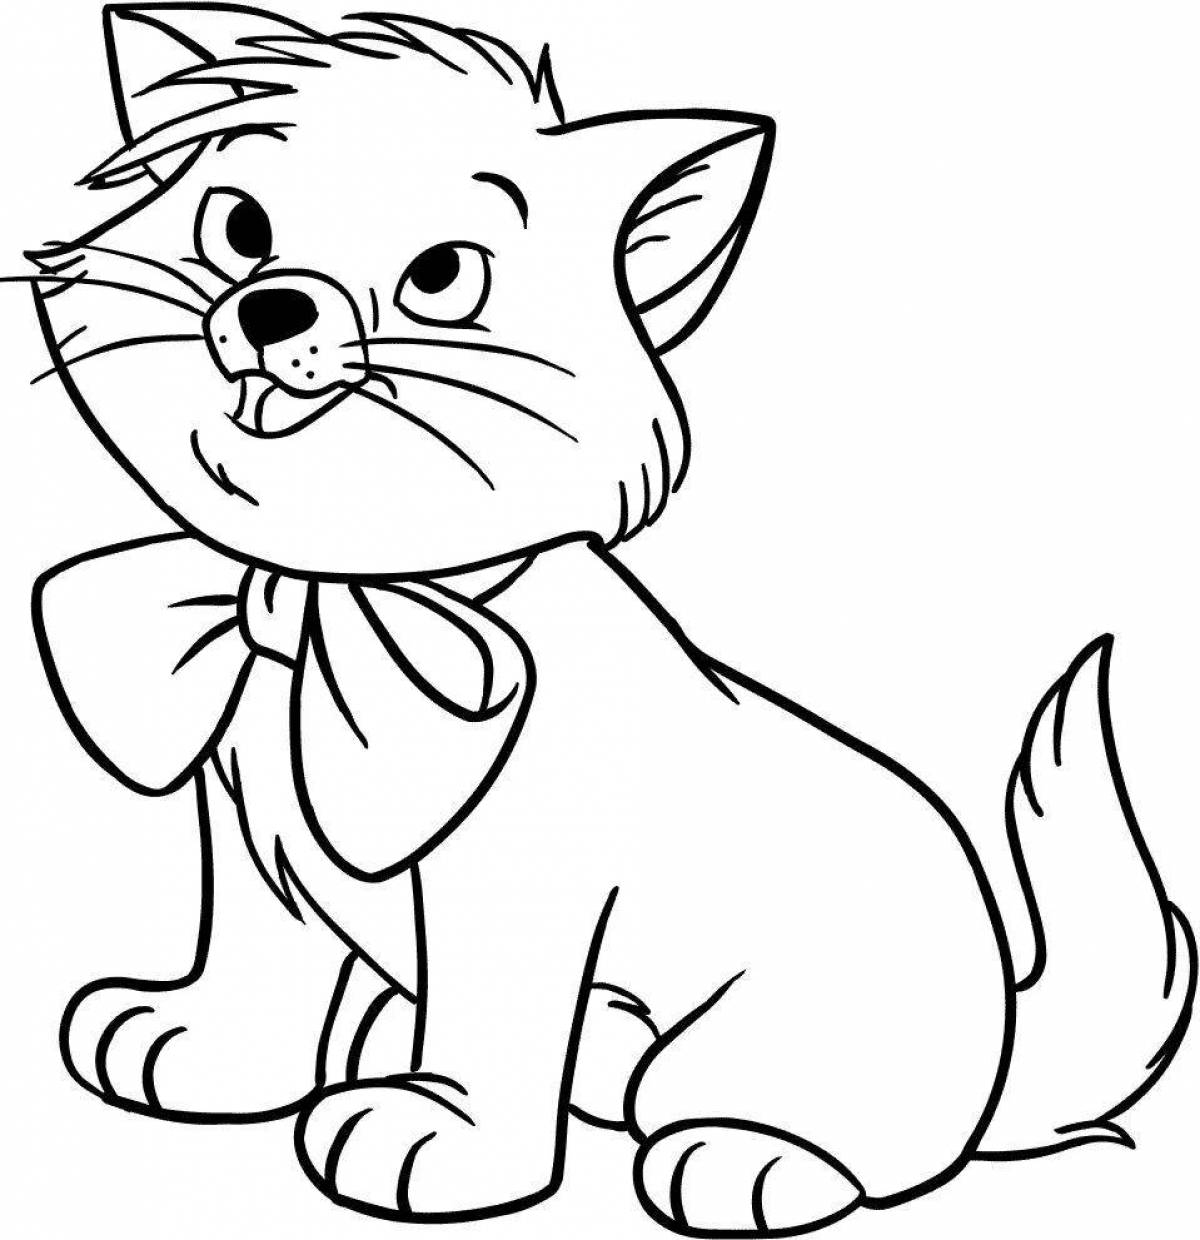 Раскрасы котов. Рисунки для раскрашивания. Раскраска кот. Кошка раскраска для детей. Котенок раскраска для малышей.